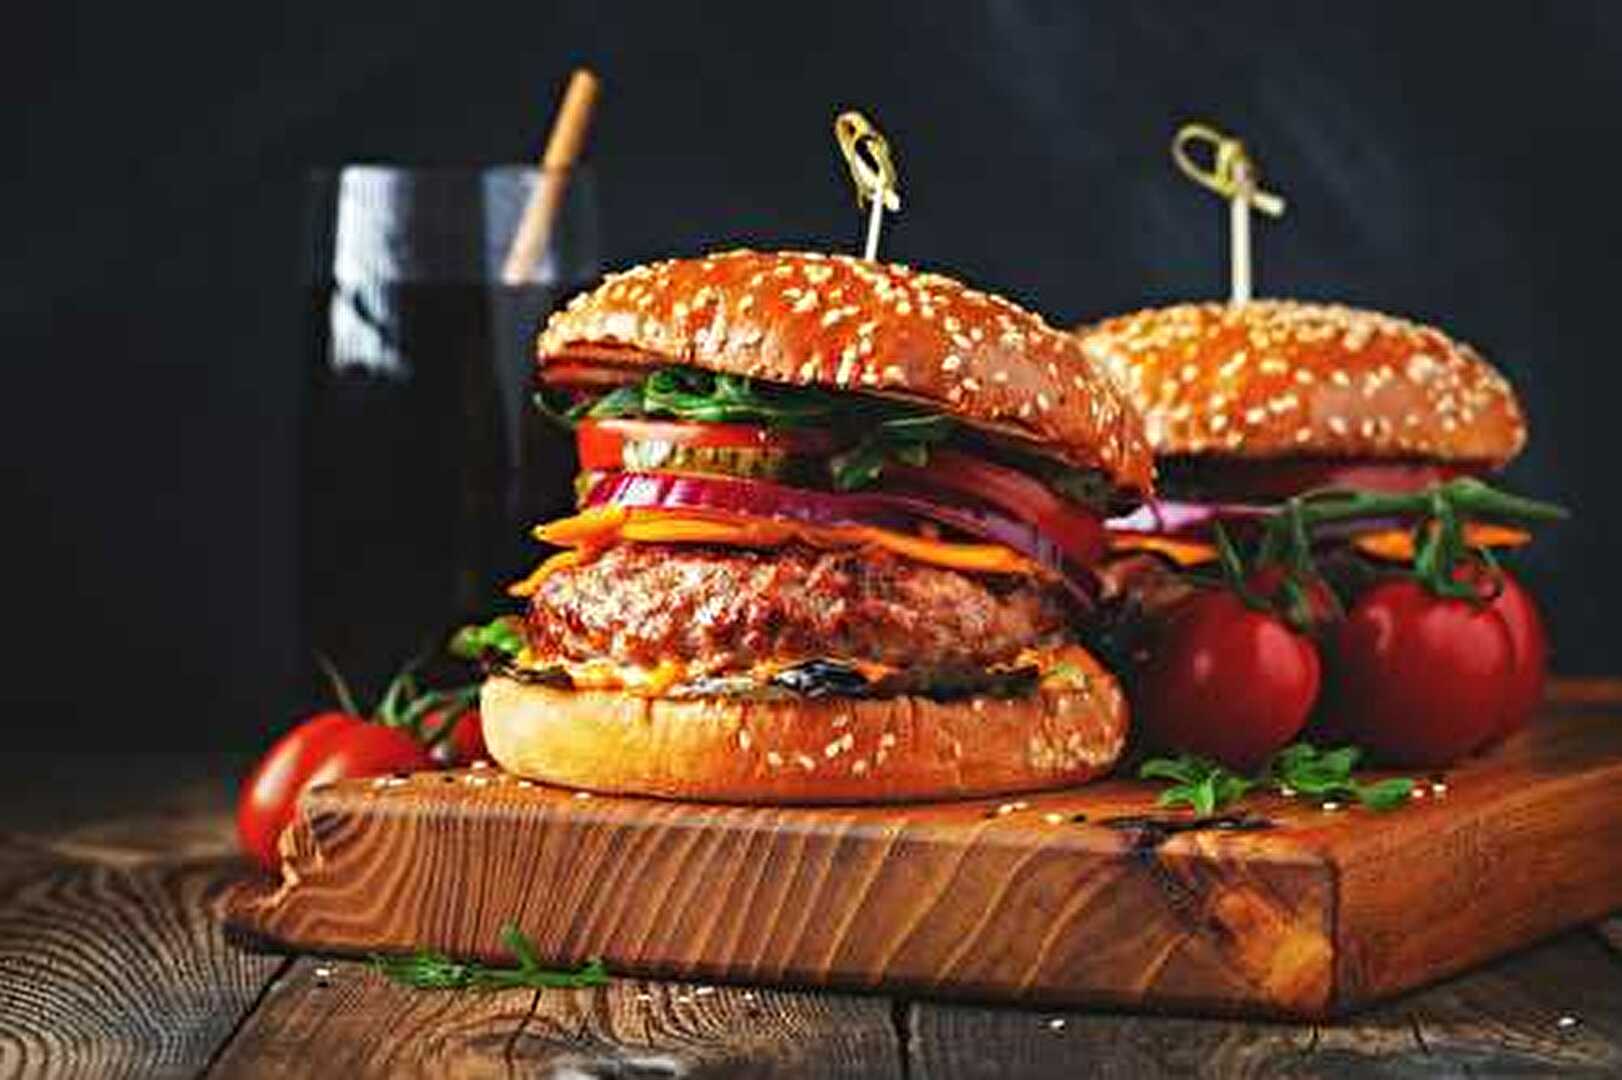 Le Burger Cheddar Double à l'Oignon Rouge